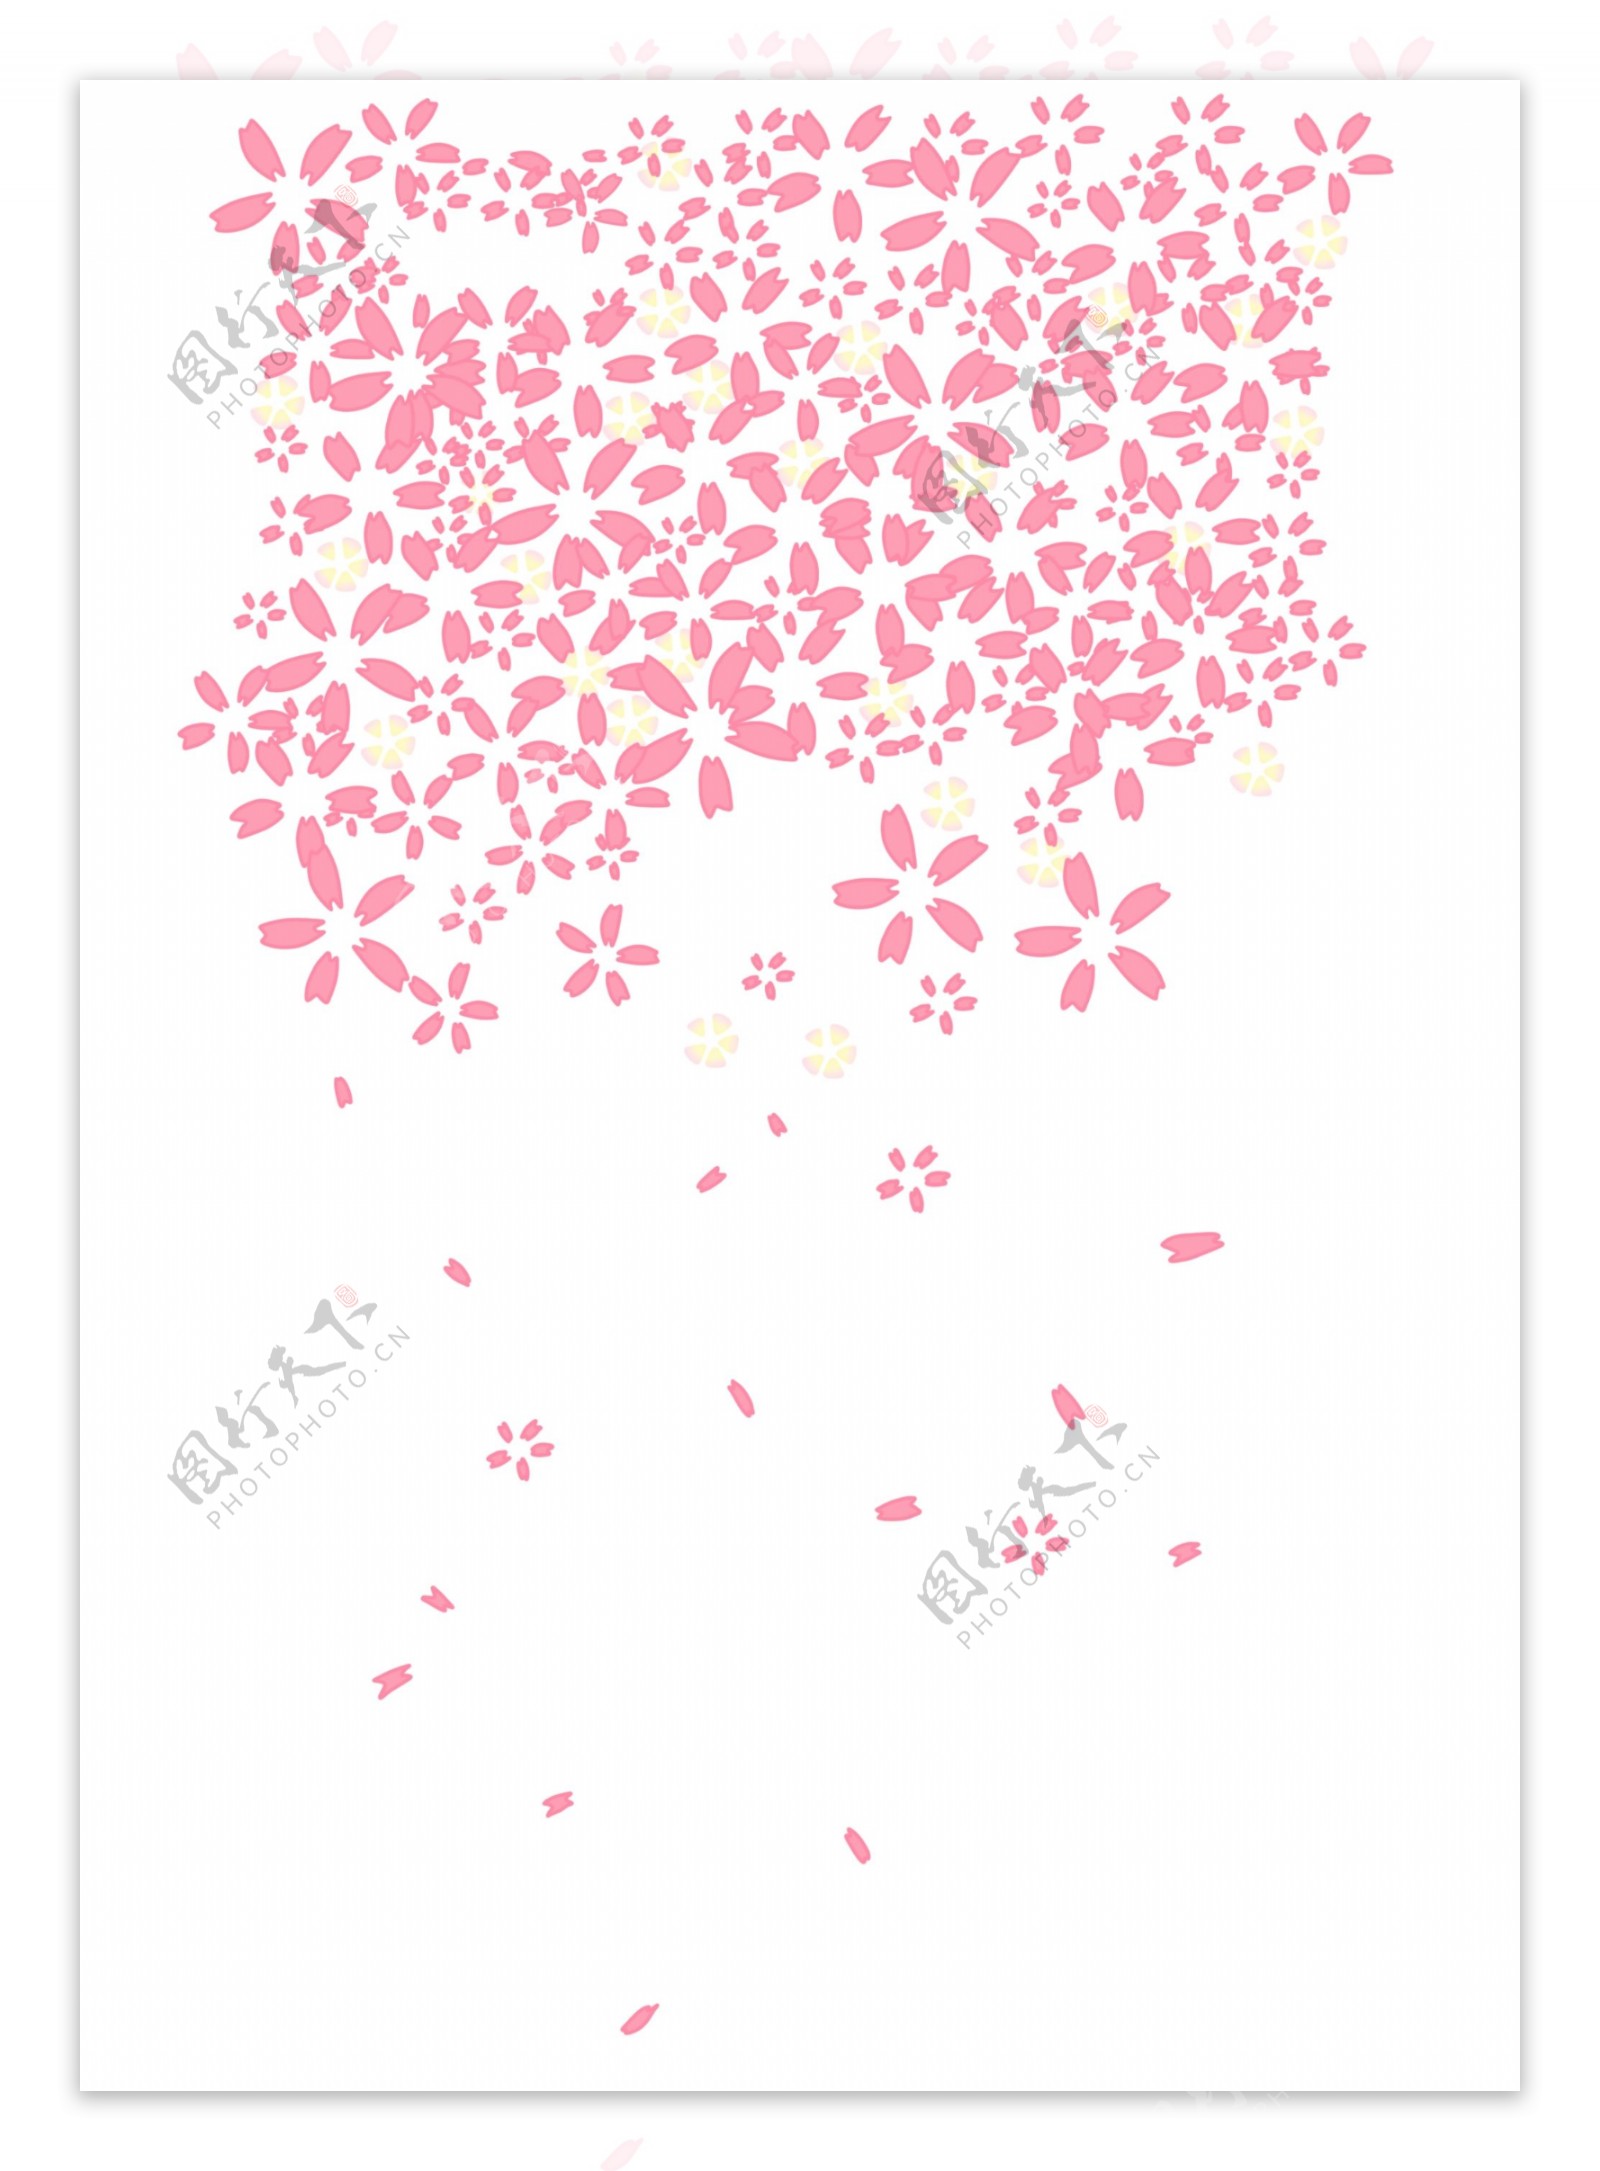 粉色樱花矢量图